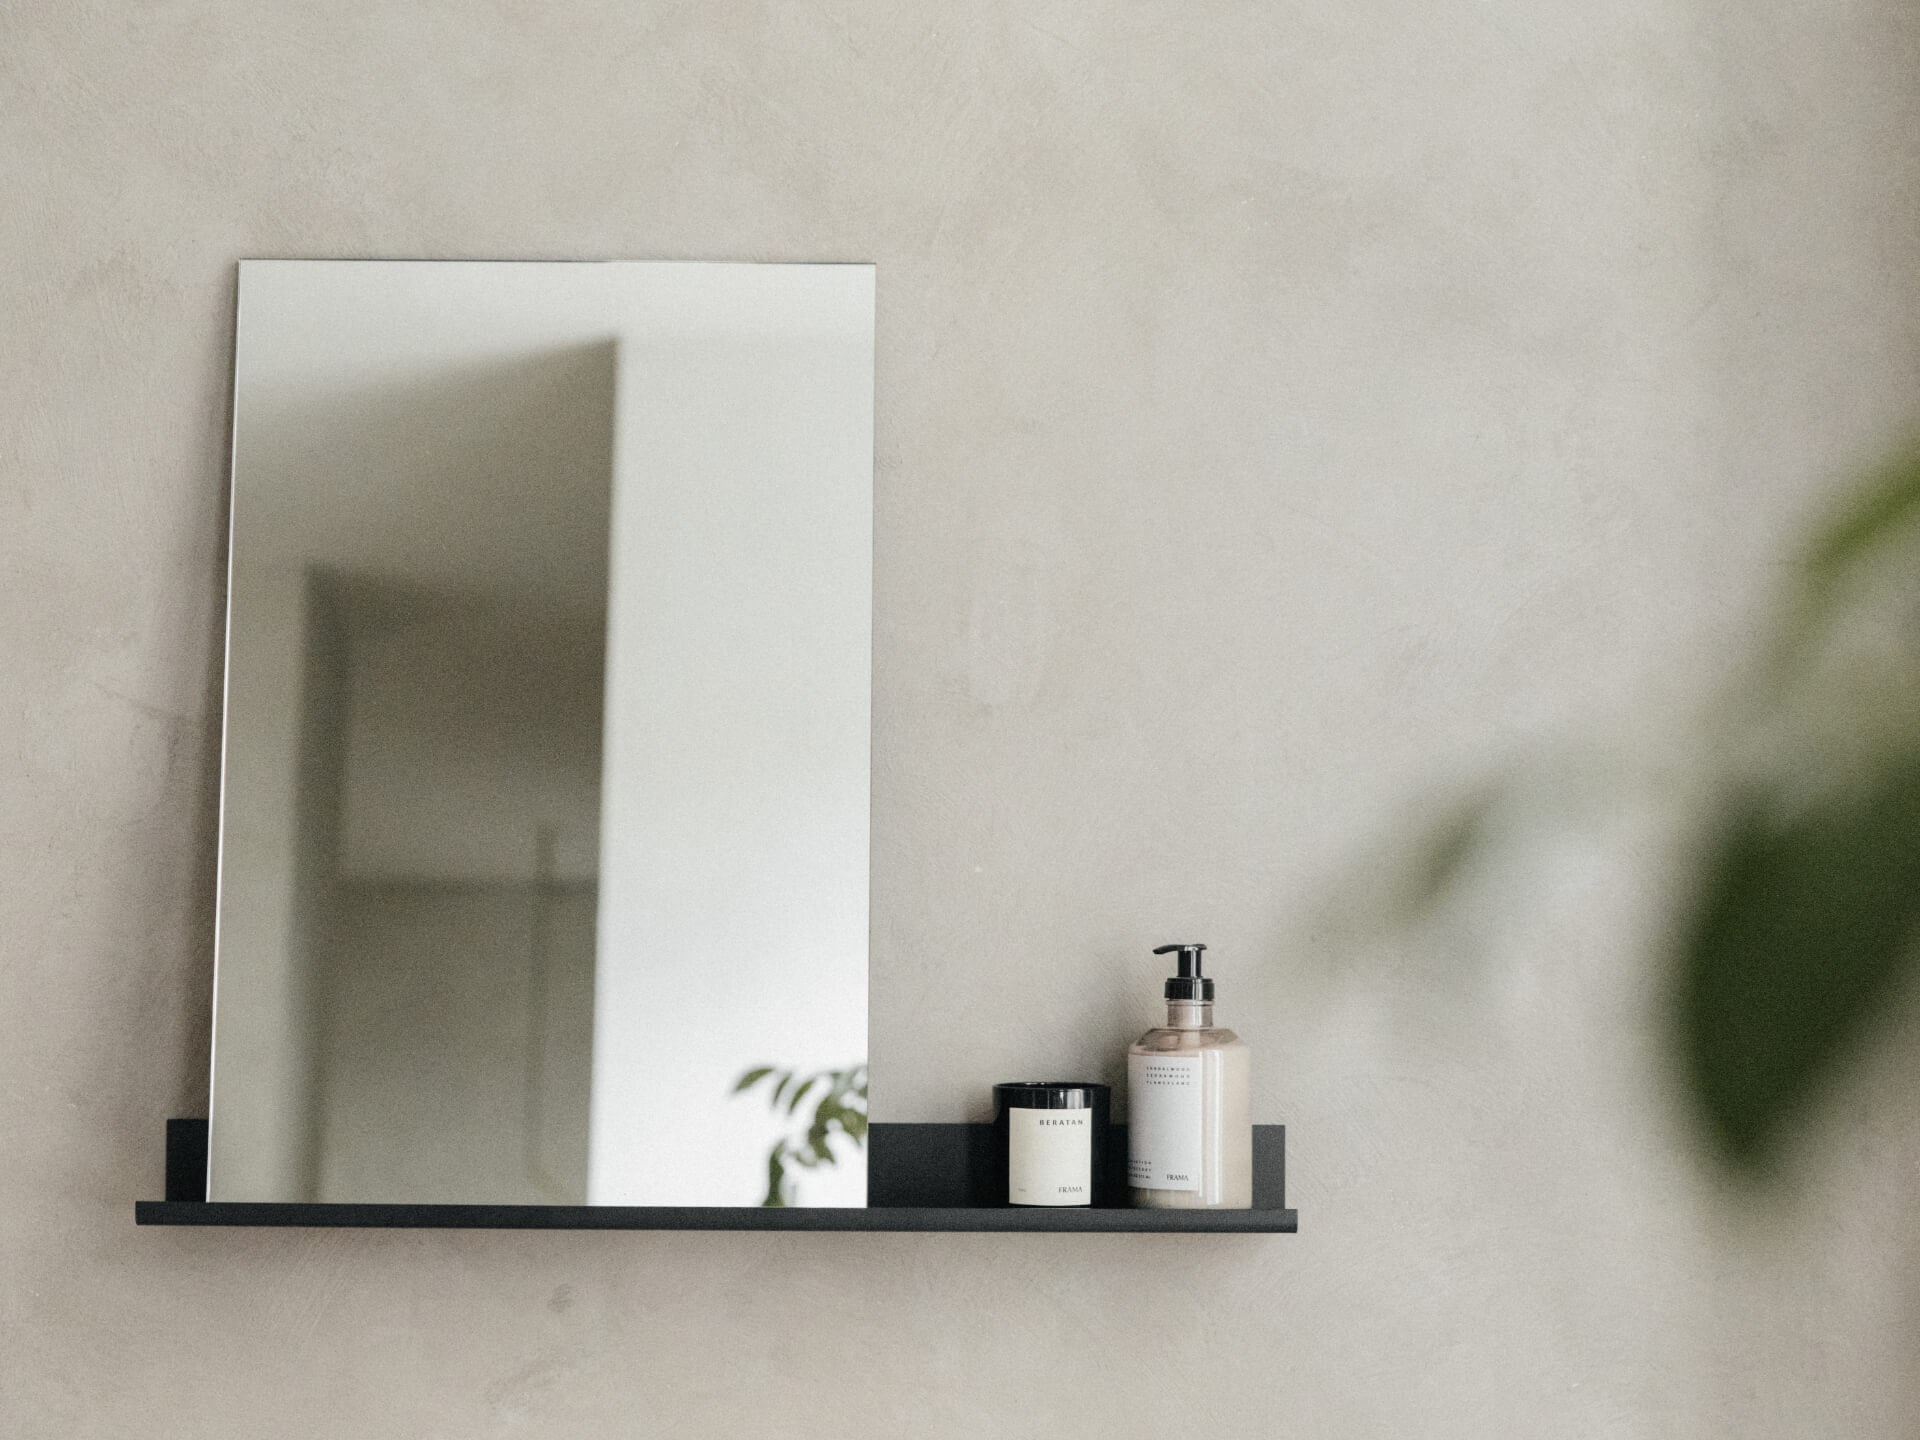 Produktbilde speil med hylle. MS-1 mirror shelf Frama med såpe og grønne detaljer.